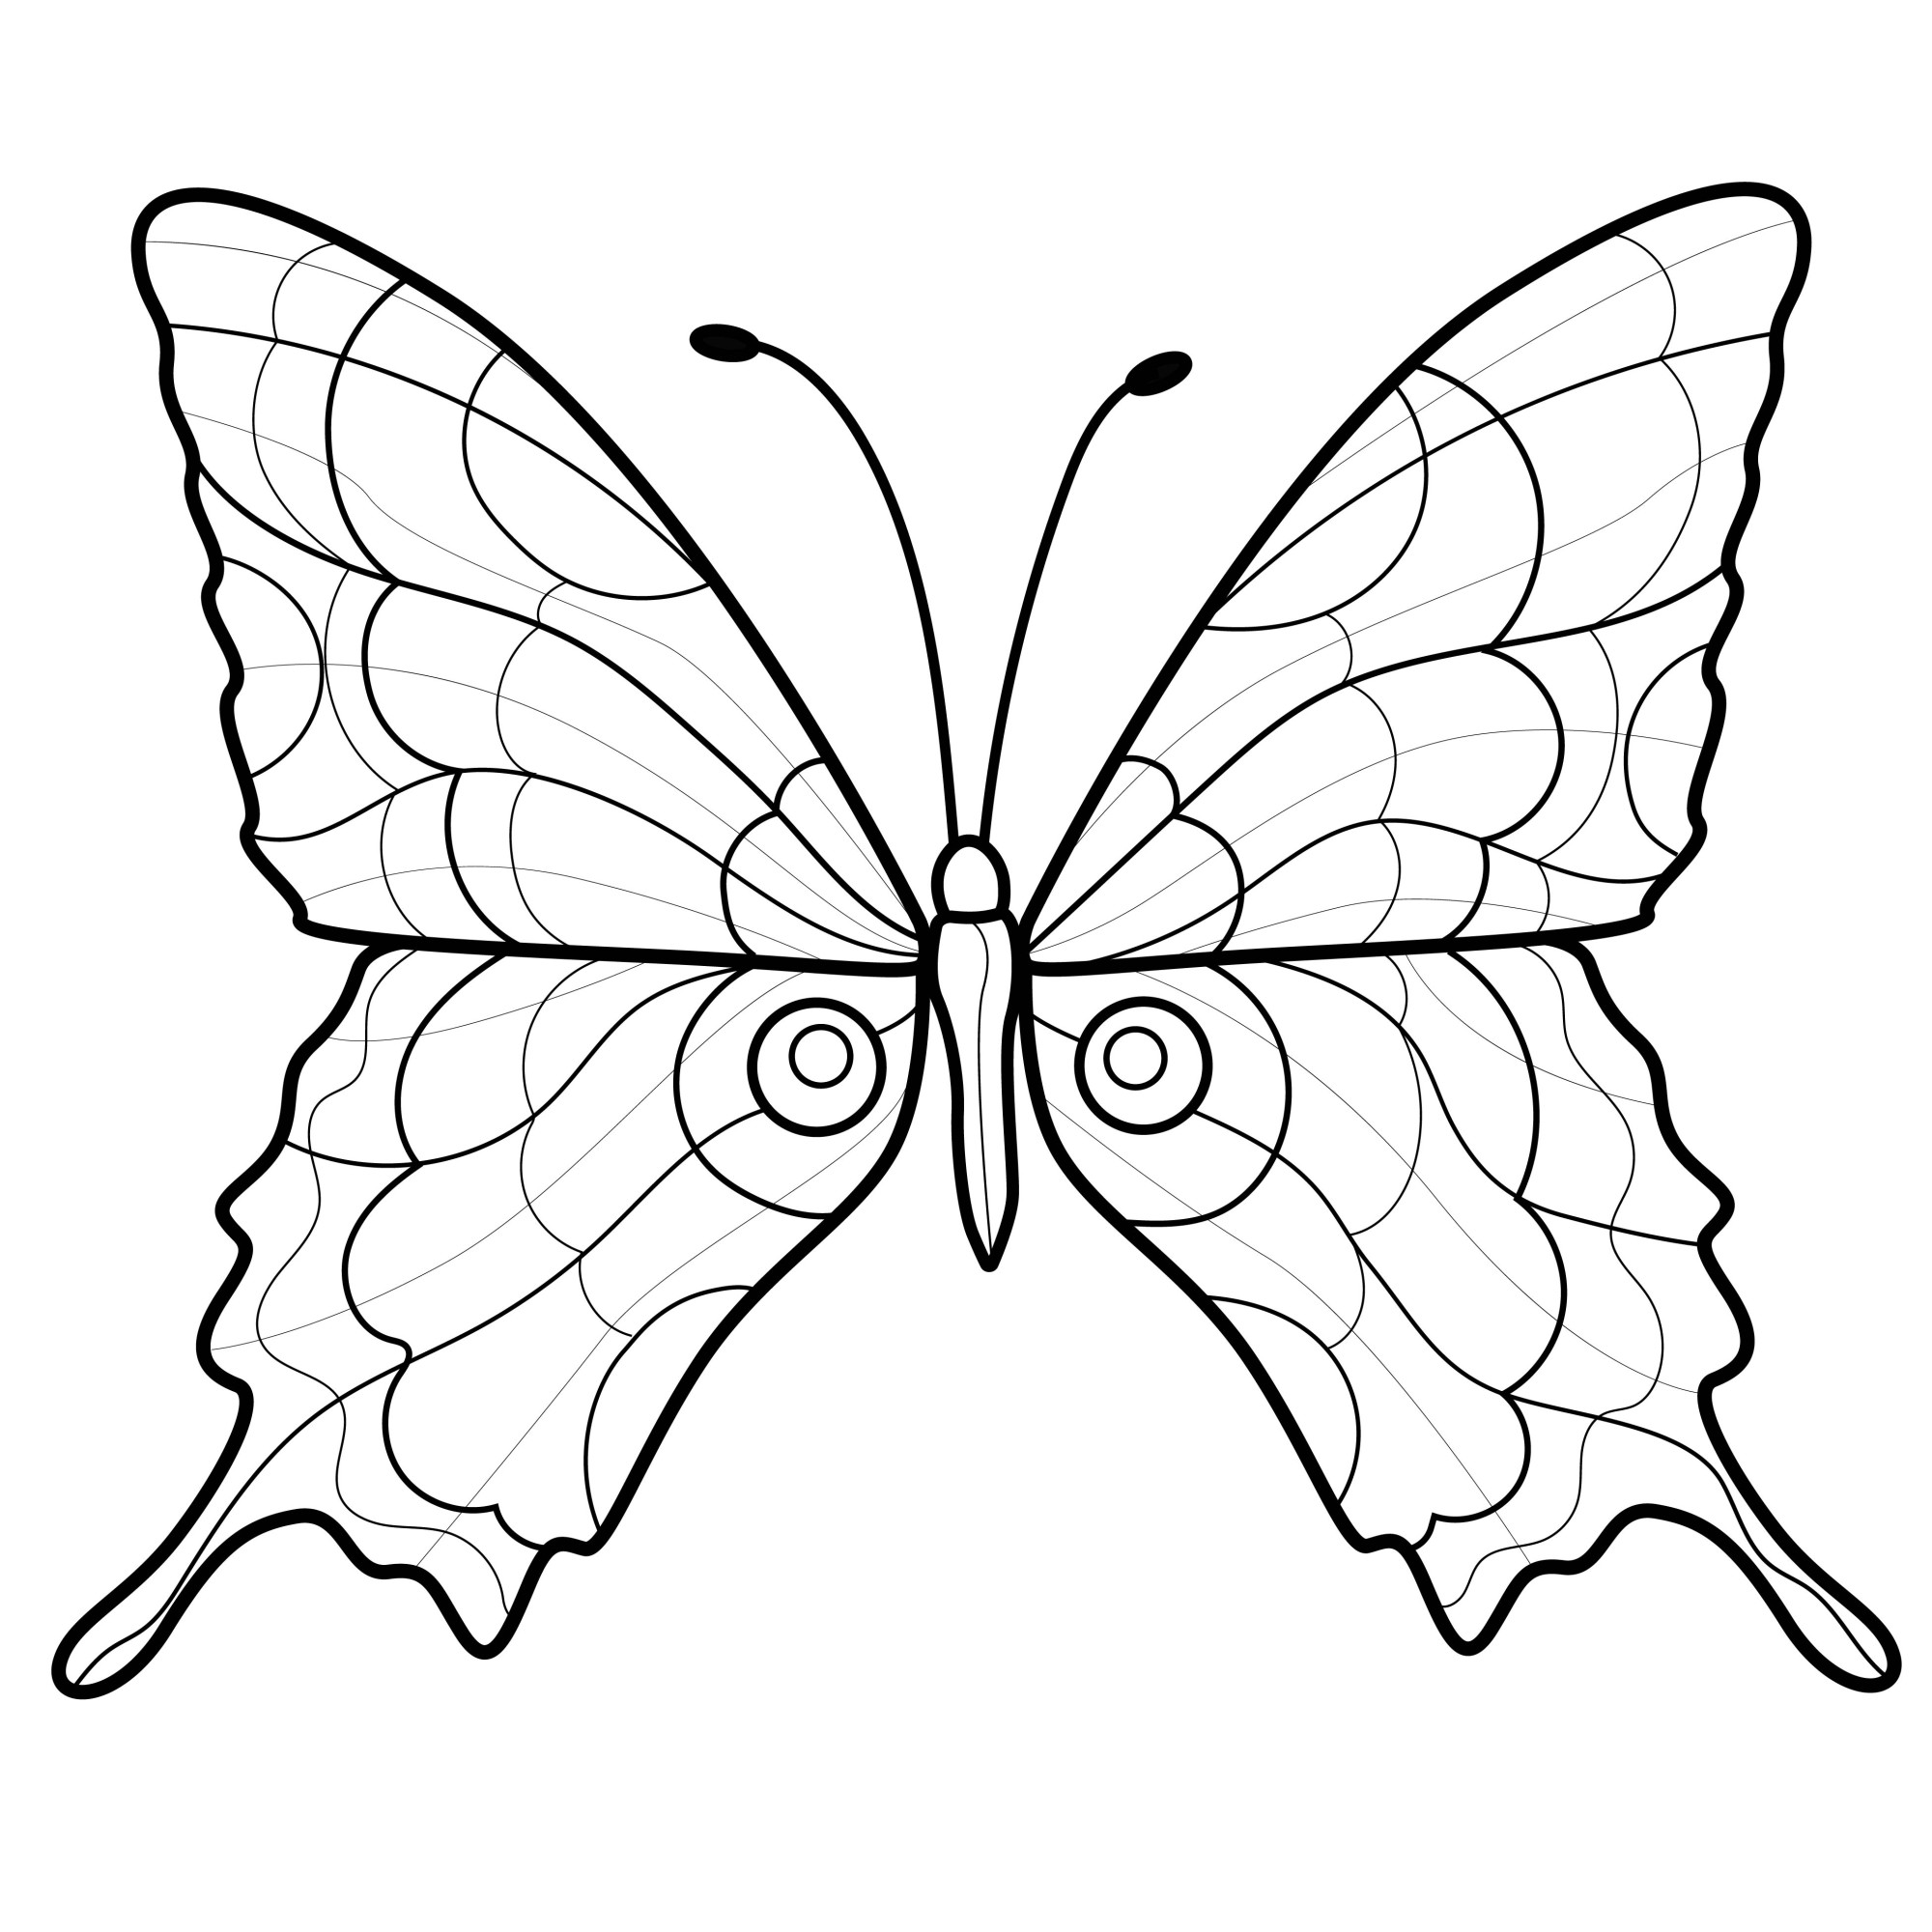 Раскраска для детей: антистресс бабочка